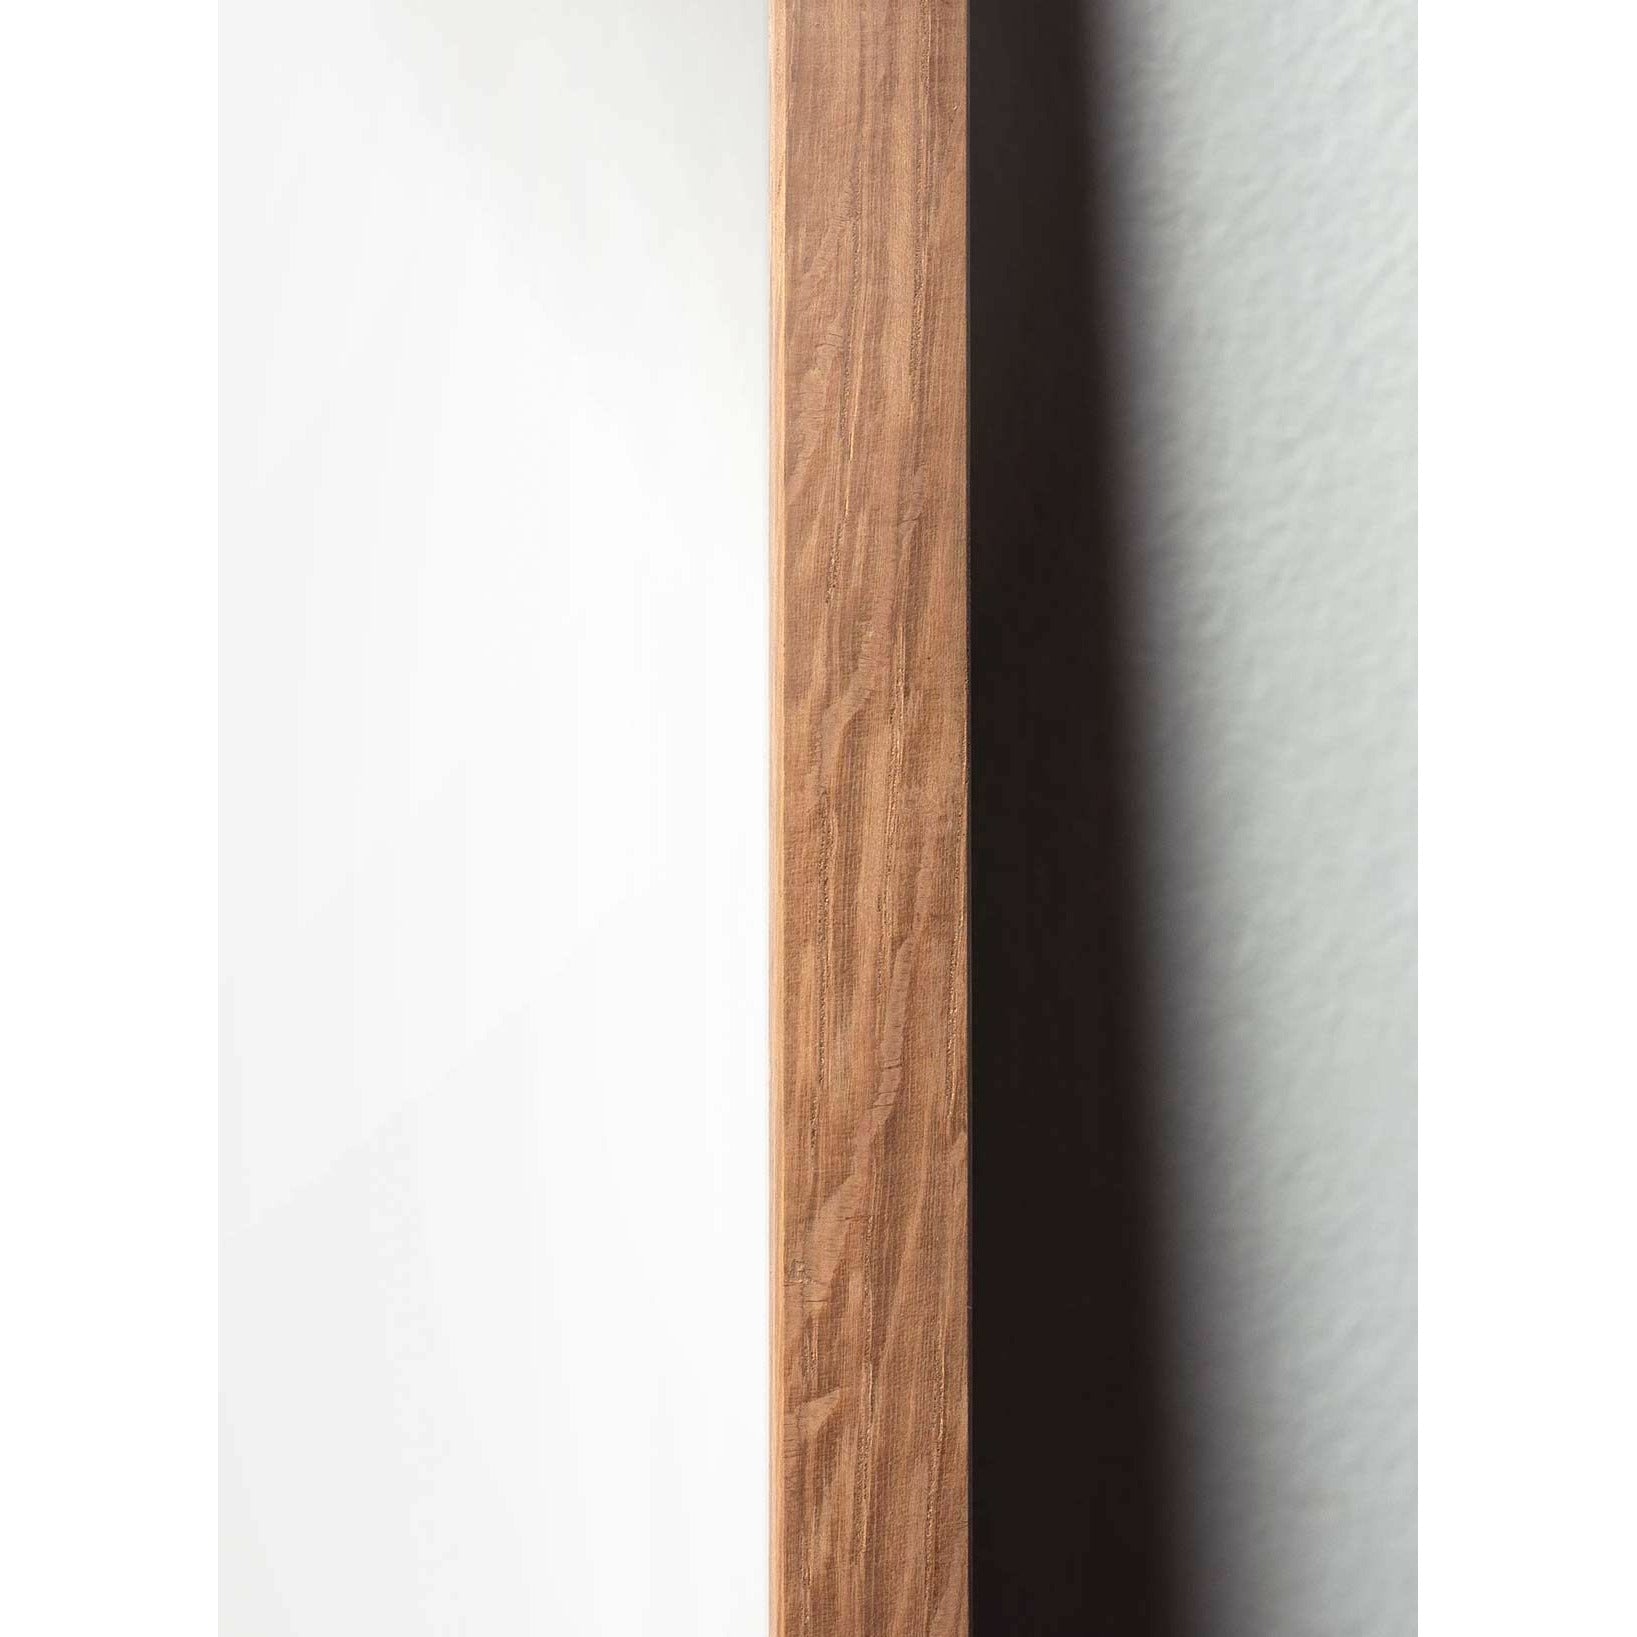 Brainchild Affiche de ligne de cygne, cadre en bois clair 50x70 cm, fond blanc